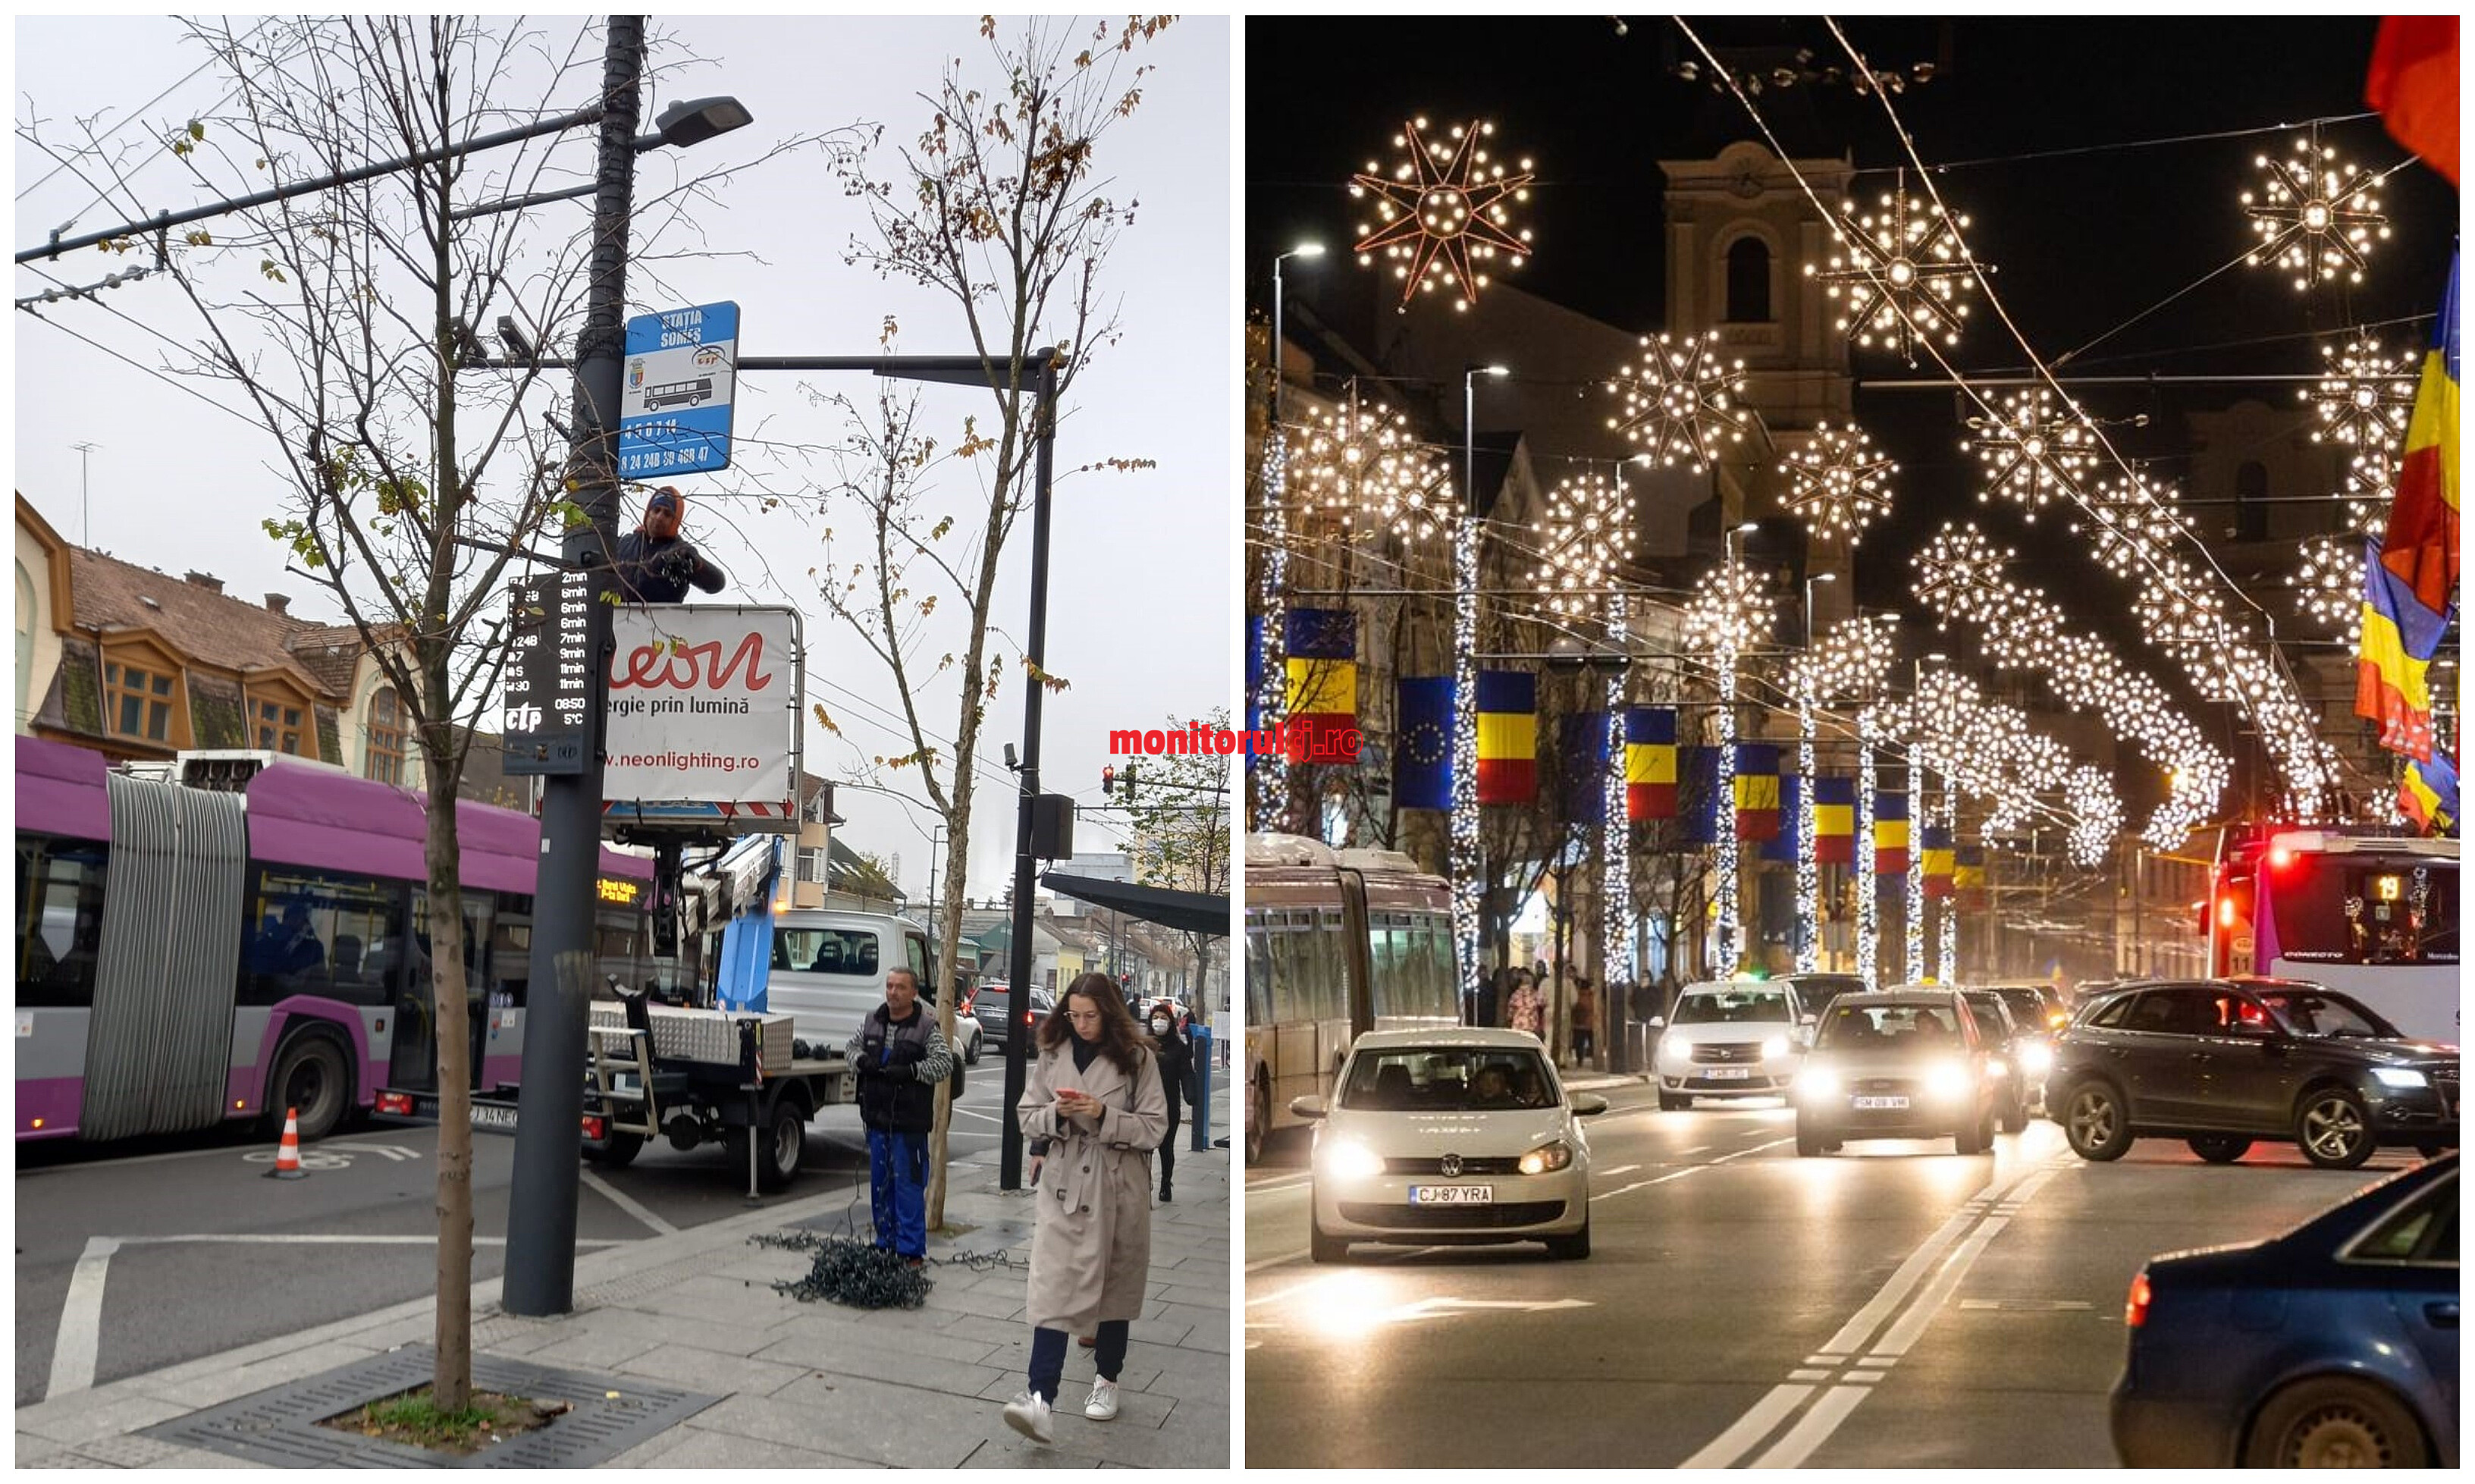 Se instalează iluminatul festiv. FOTO 1: Monitorul de Cluj; FOTO 2: Facebok/ Municipiul Cluj-Napoca